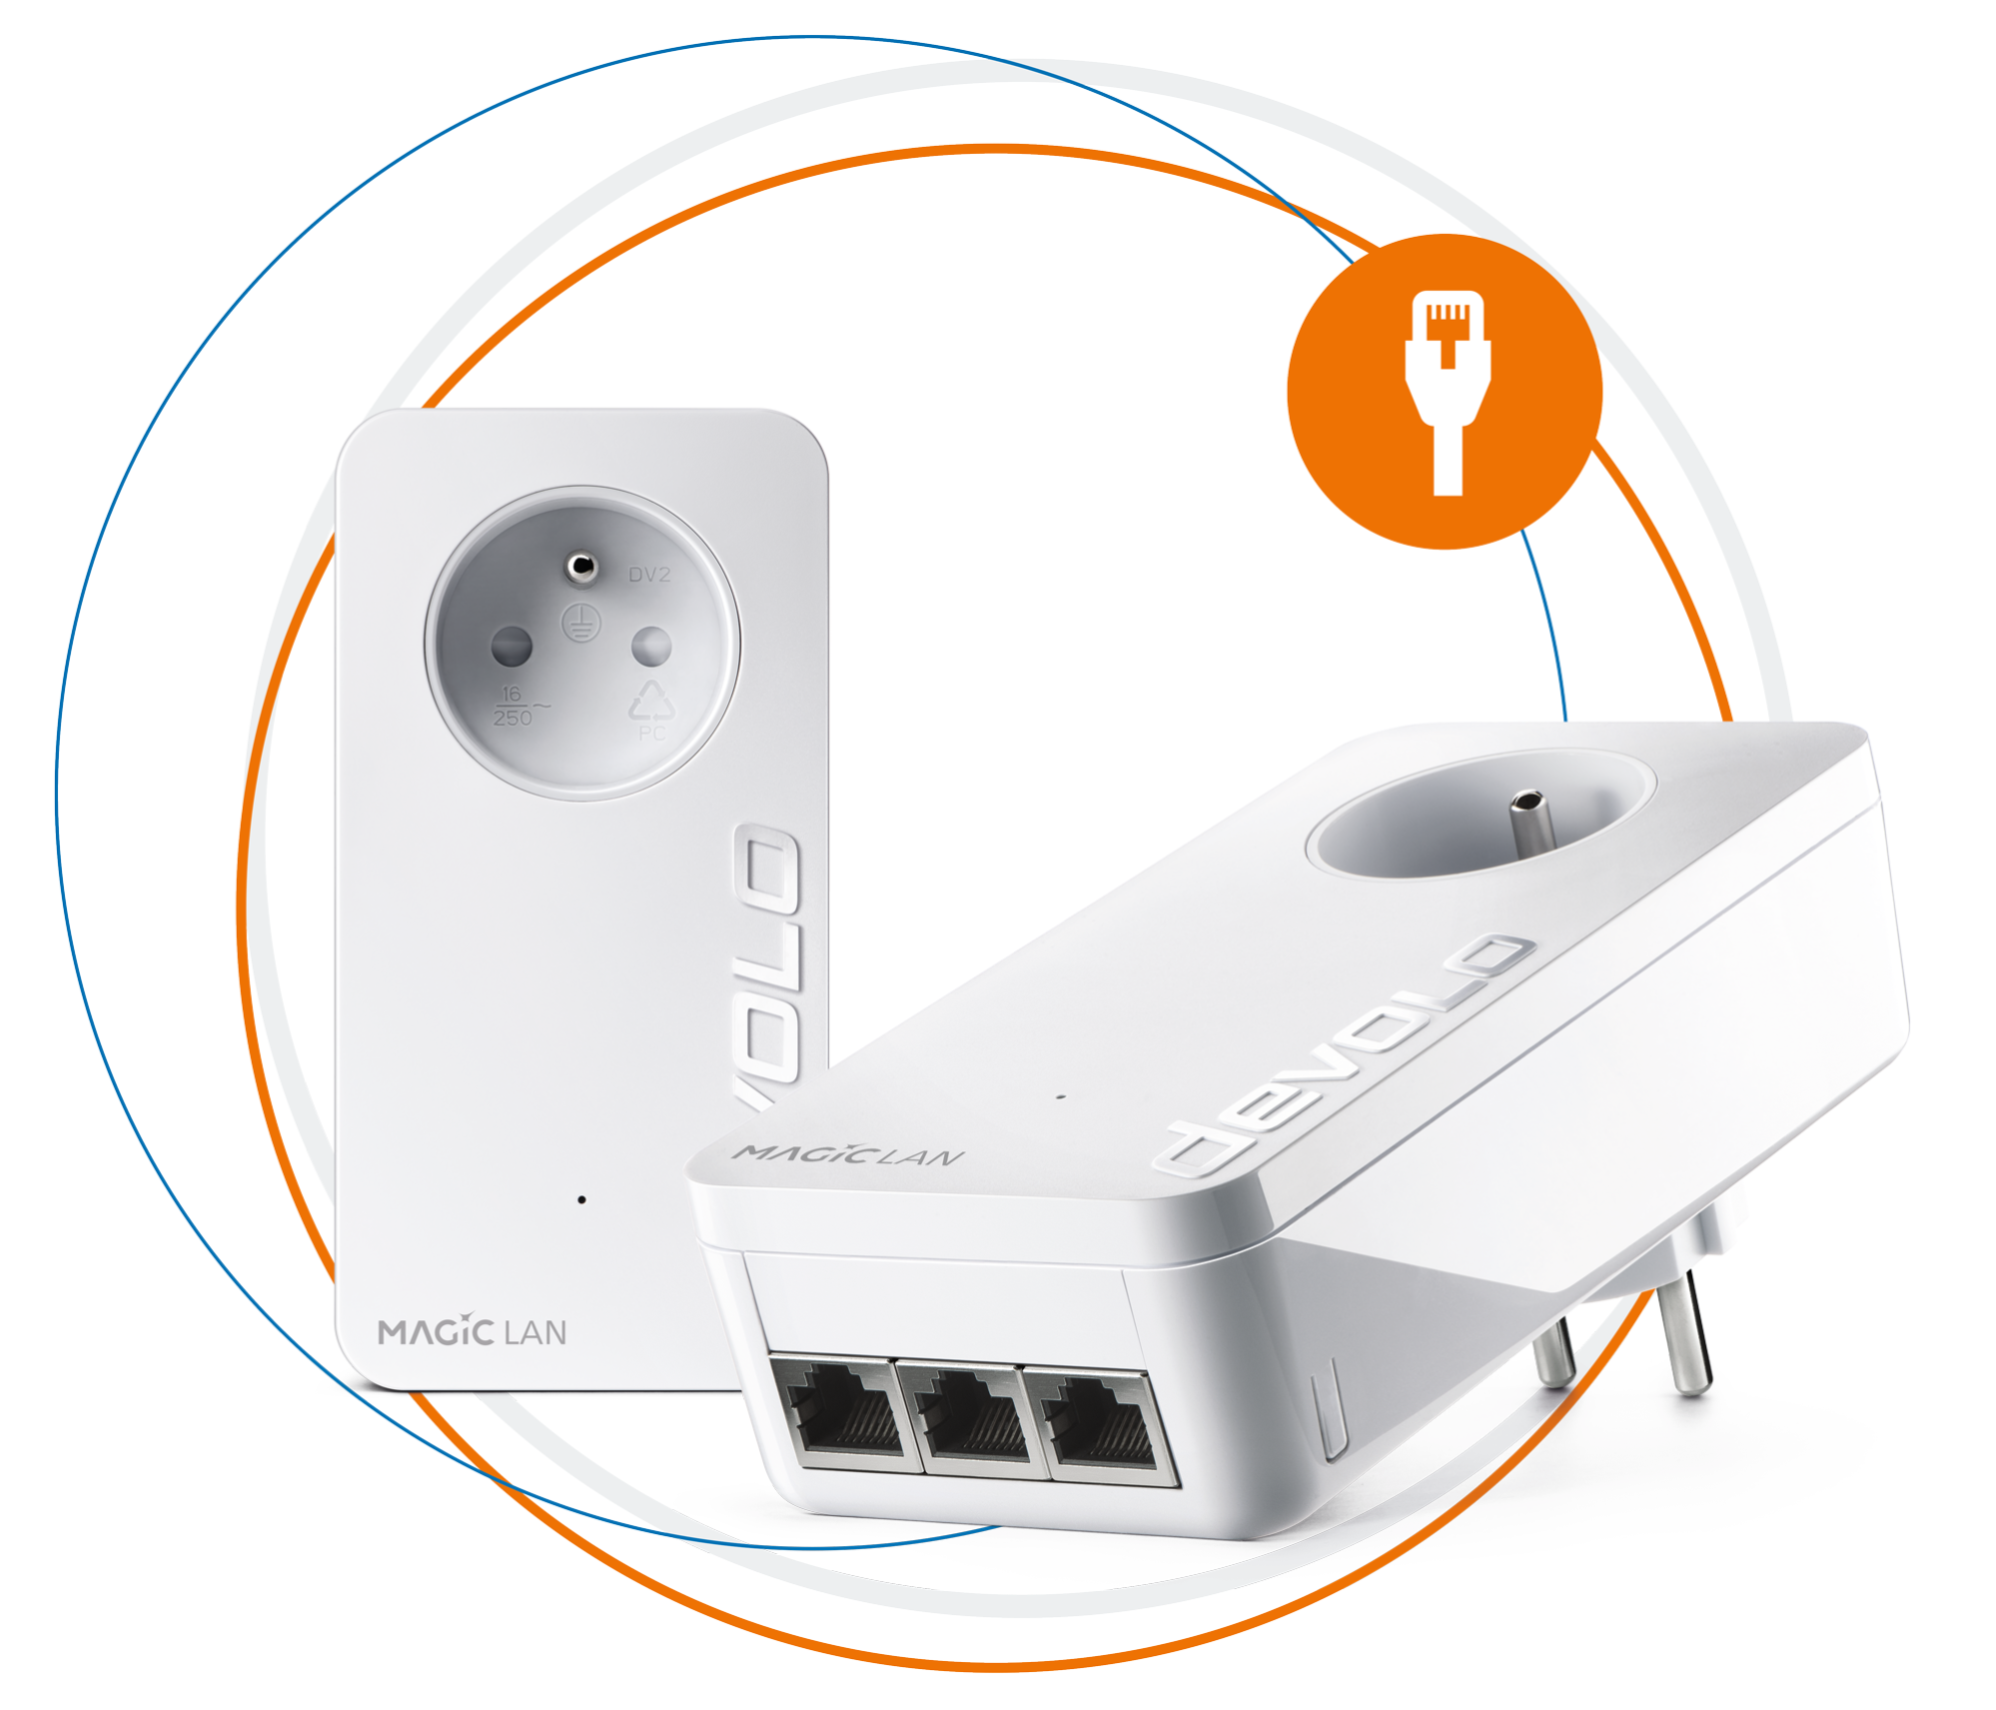 Devolo Magic 2 WiFi Next 2400 Mbit/s Ethernet/LAN Blanc 1 pièce(s)